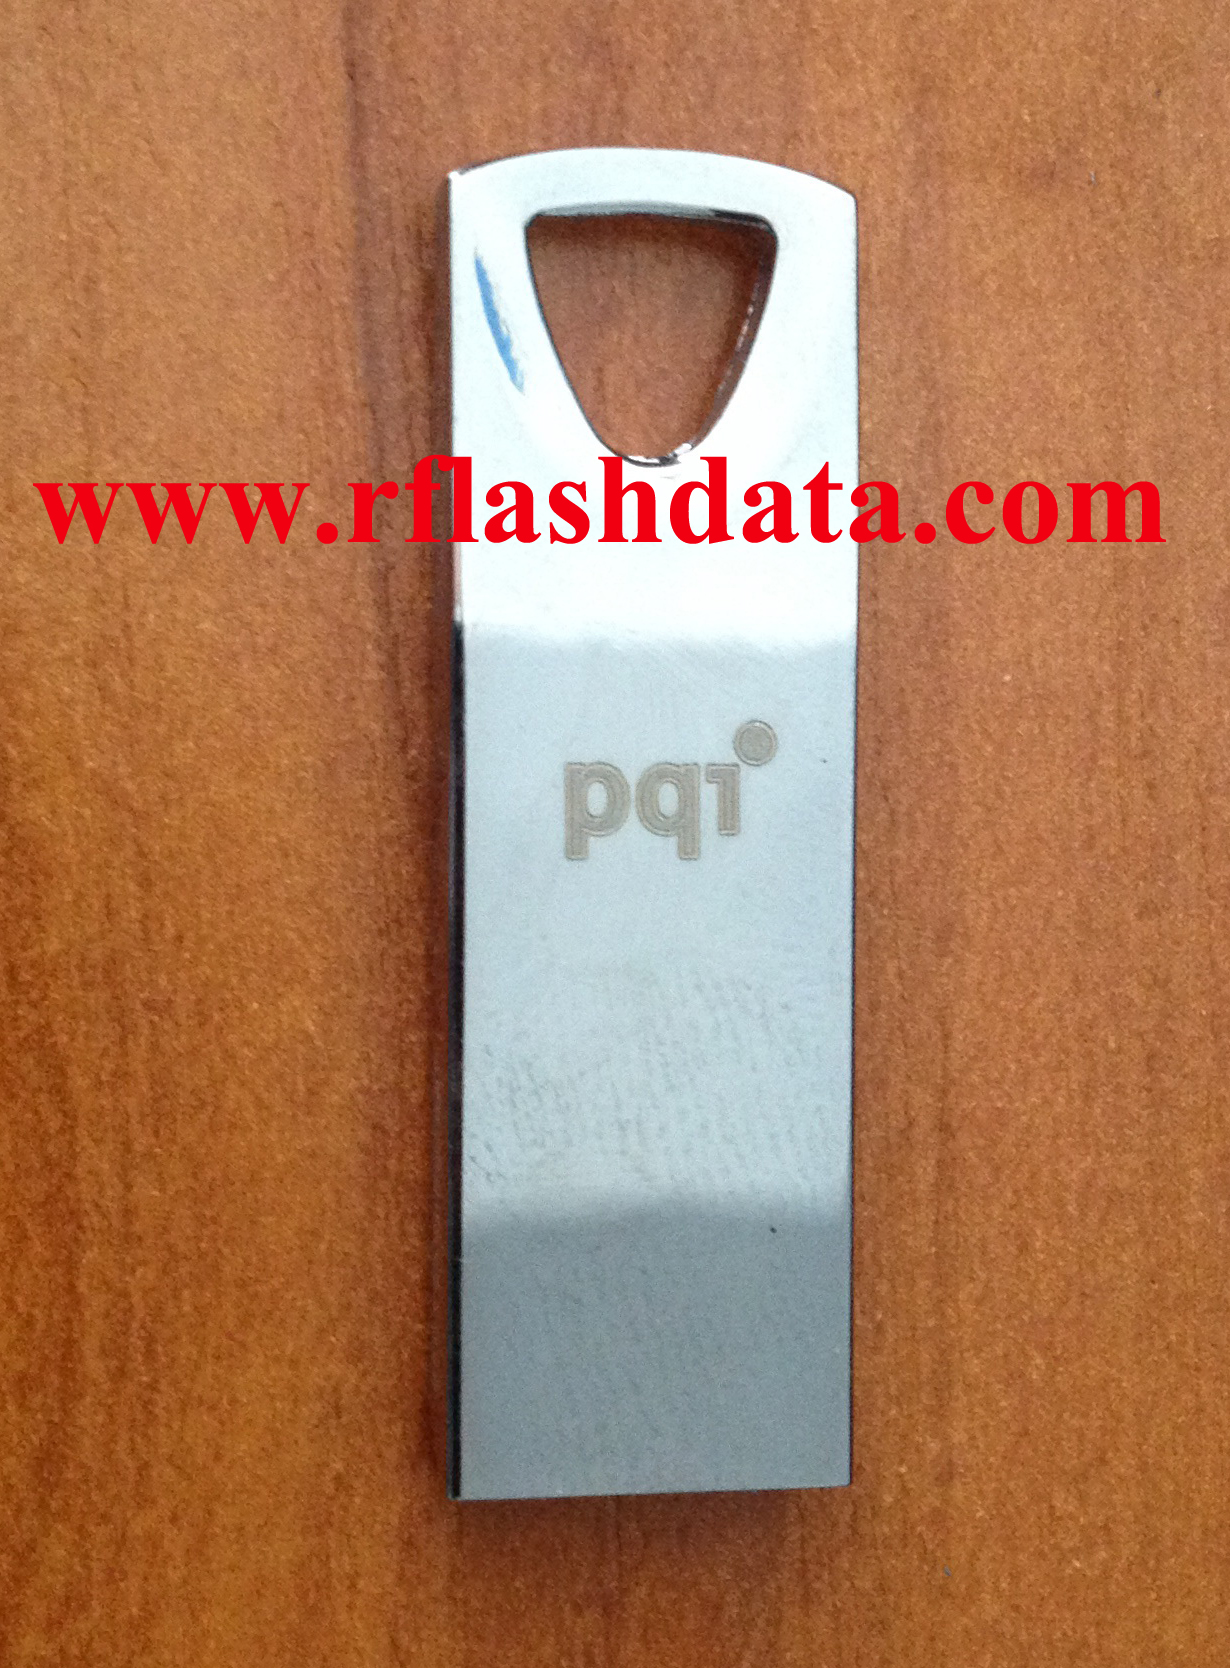 PQI Flash drive